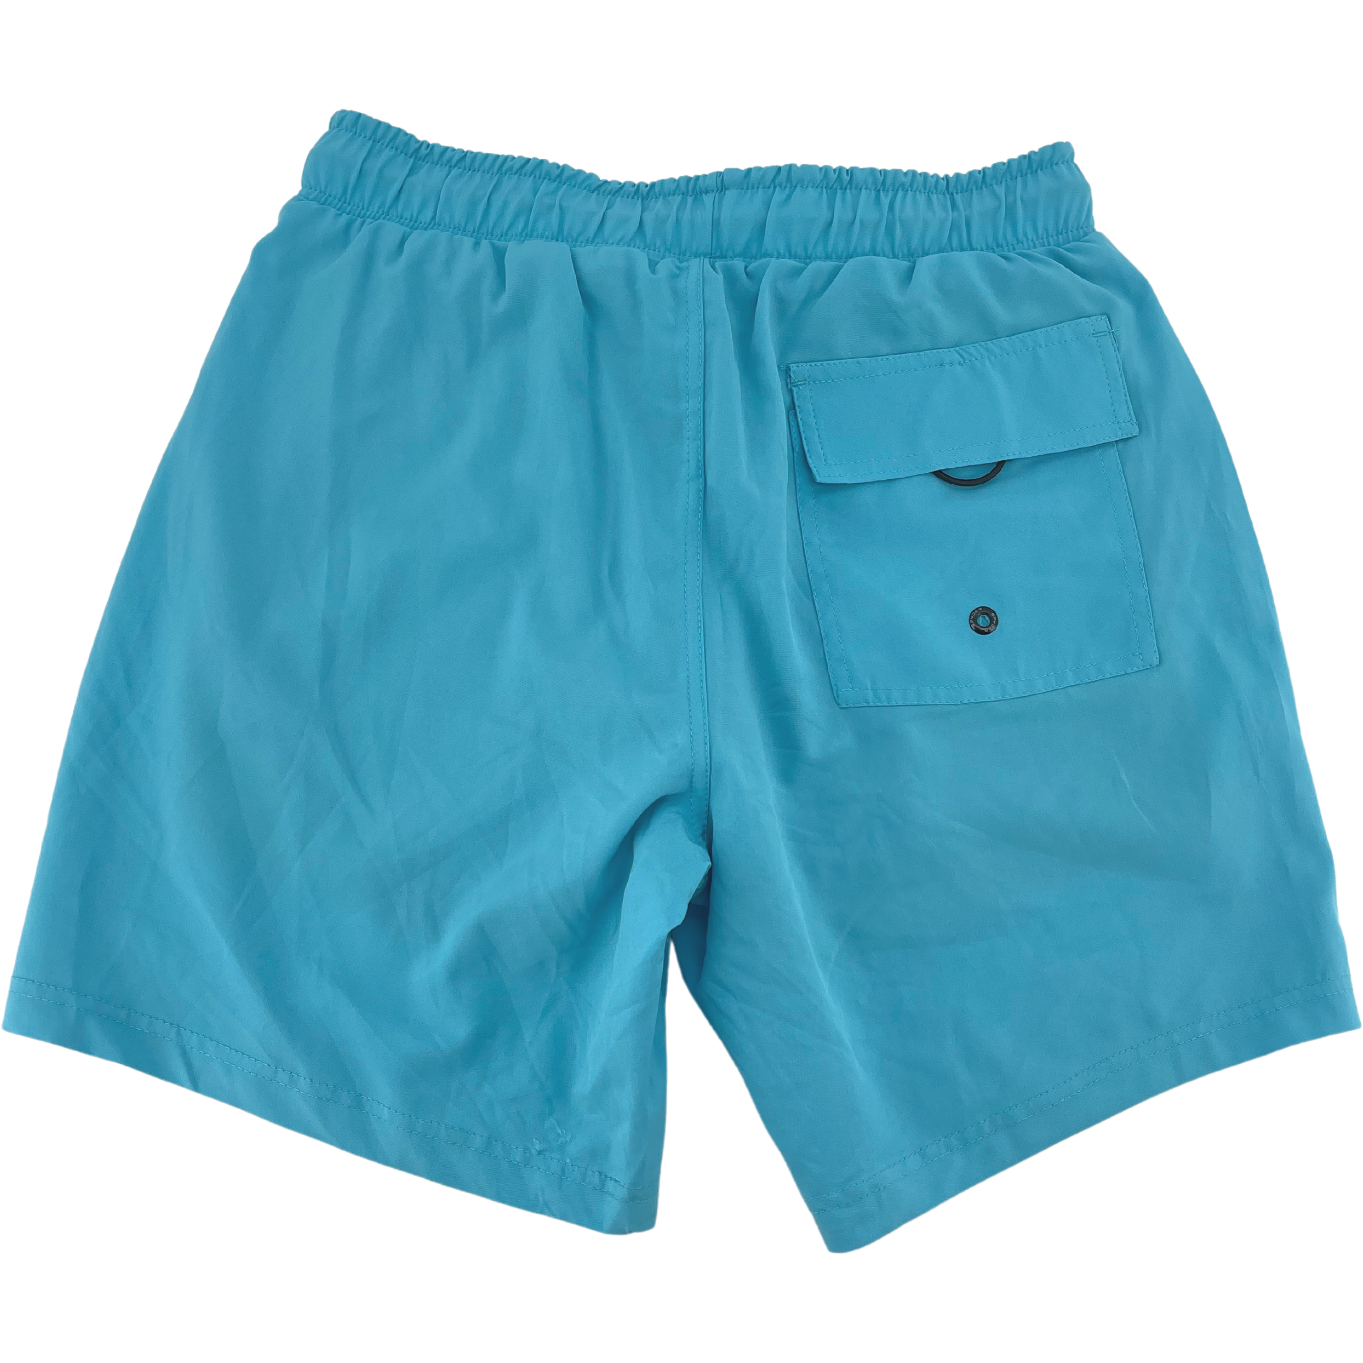 Spyder Men's Swim Trunks / Men's Swim Shorts / Blue / Various Sizes ...